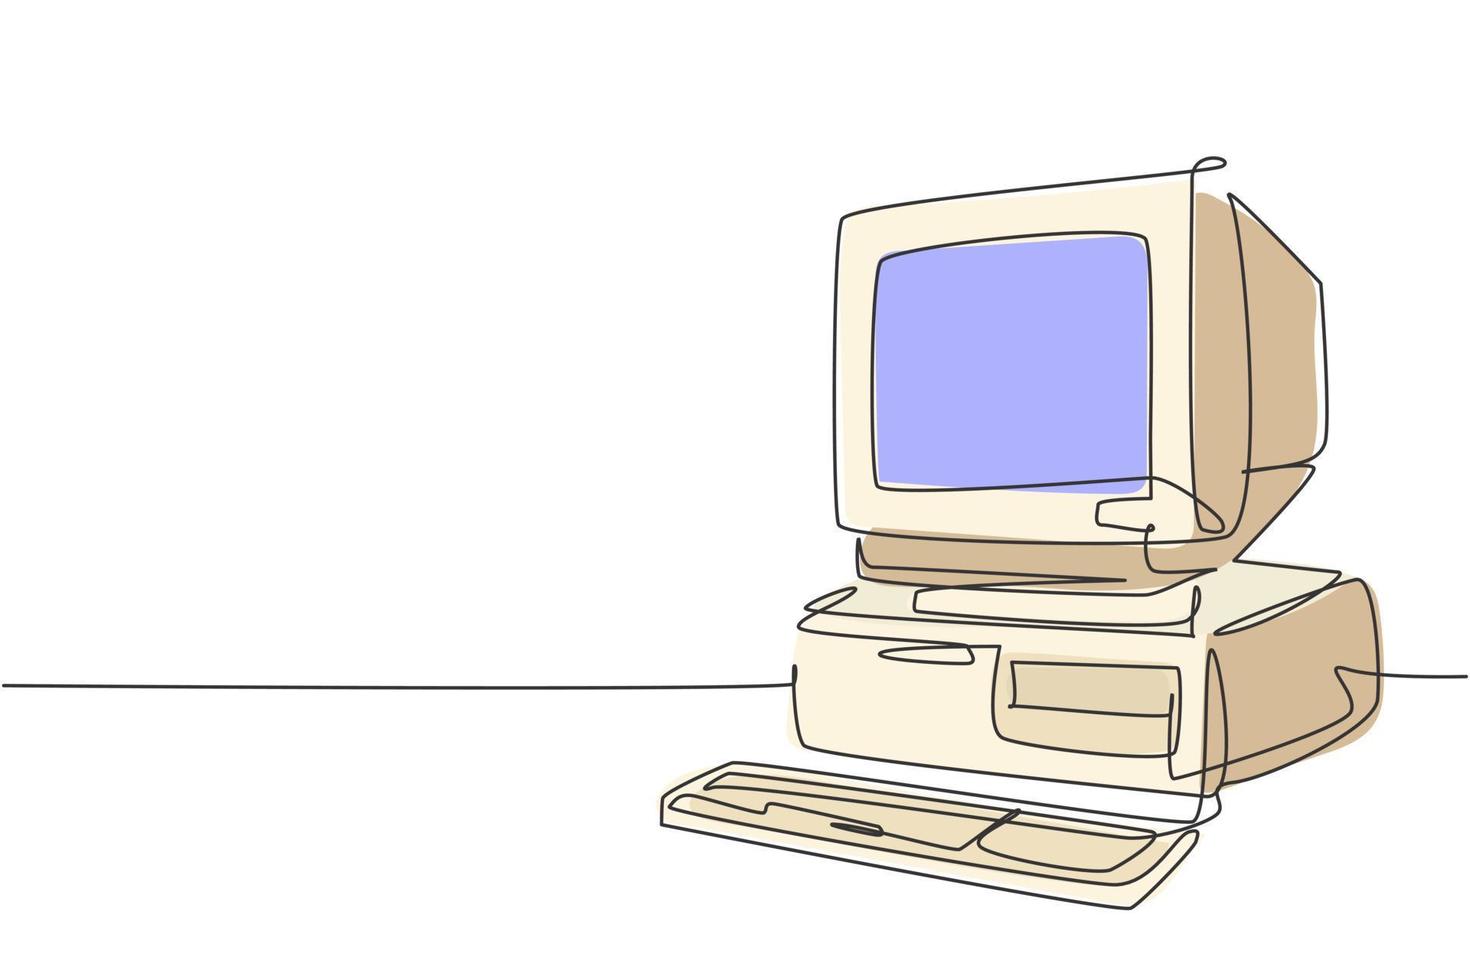 dibujo de línea continua única de la unidad de procesador de computadora personal clásica antigua retro. CPU vintage con monitor analógico y concepto de elemento de teclado Ilustración de vector gráfico de diseño de dibujo de una línea